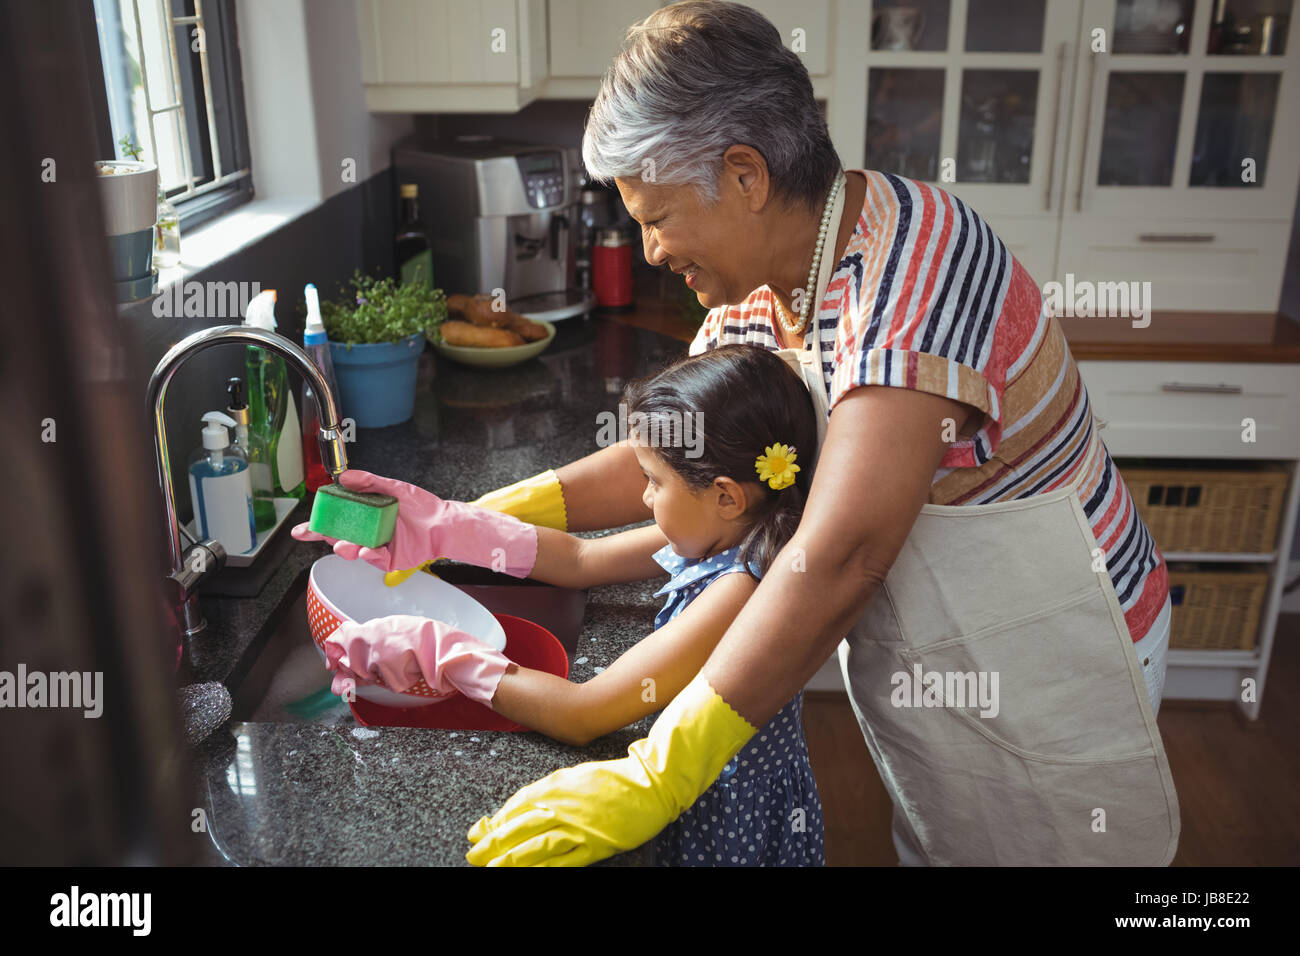 Мама моет бабушку. Помогаю бабушке мыть посуду. Помогает бабушке. Внучка моет посуду бабушке. Бабушка моется.